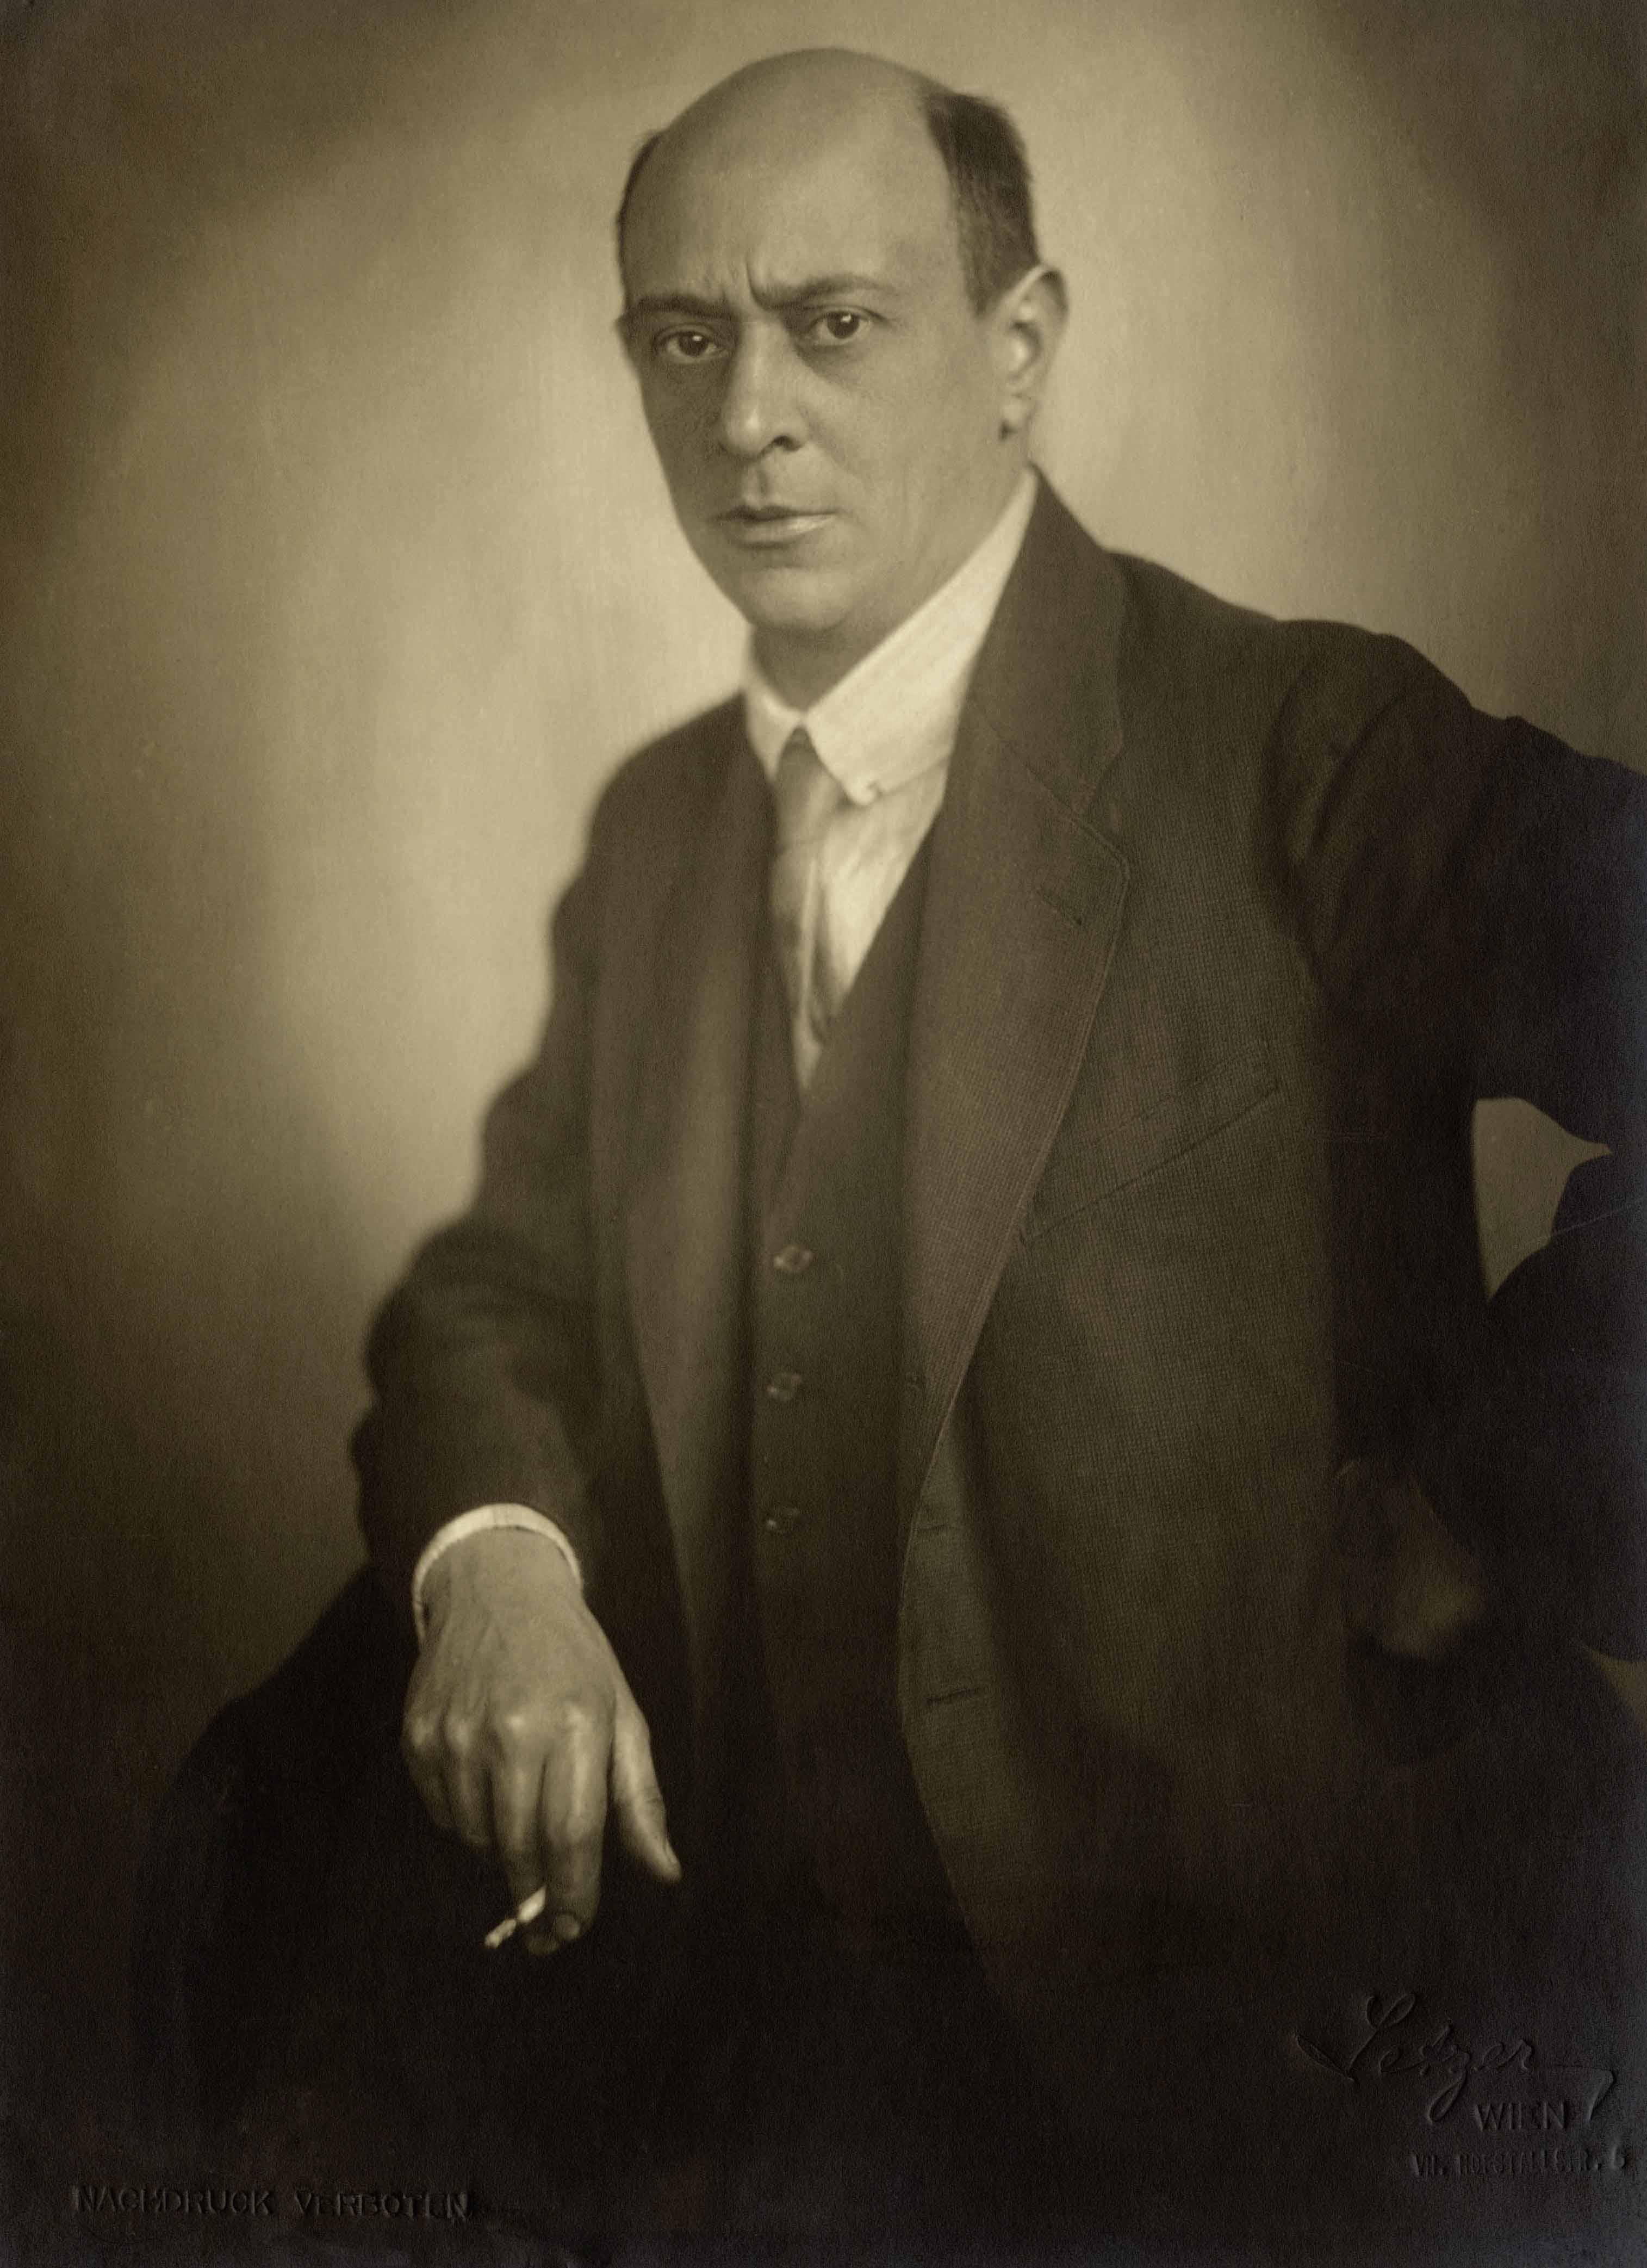 Arnold Schönberg, by Franz Xaver Setzer, Wien, 1922